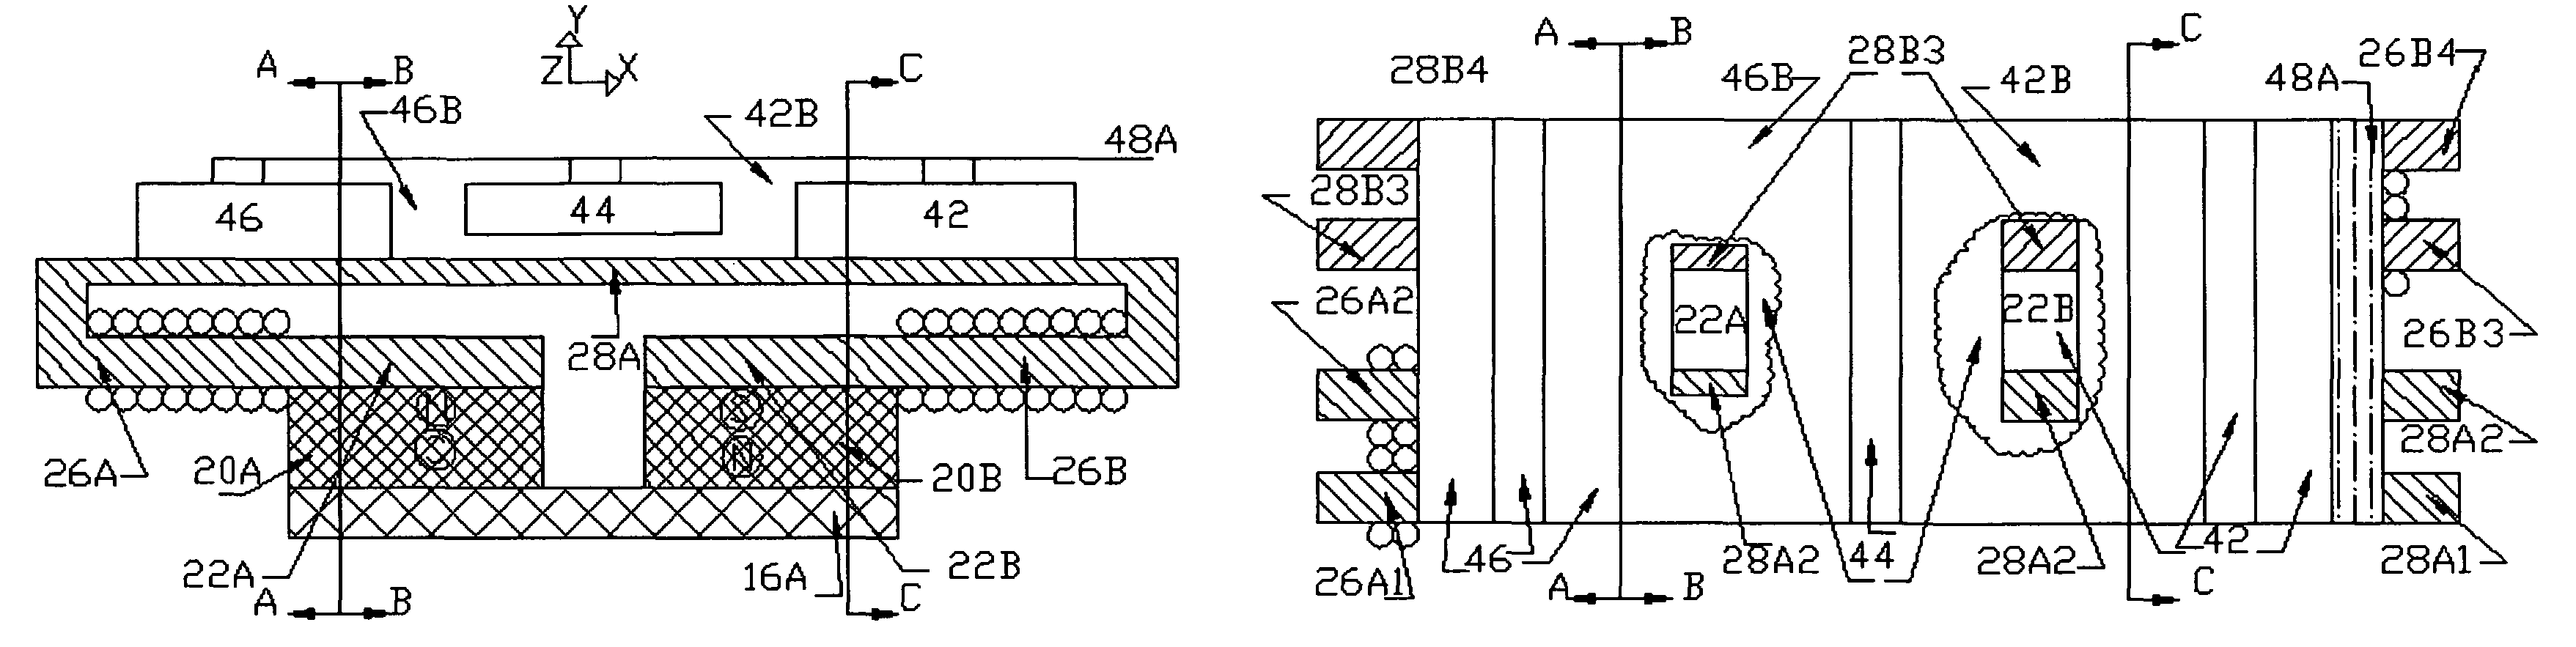 Linear tape motor